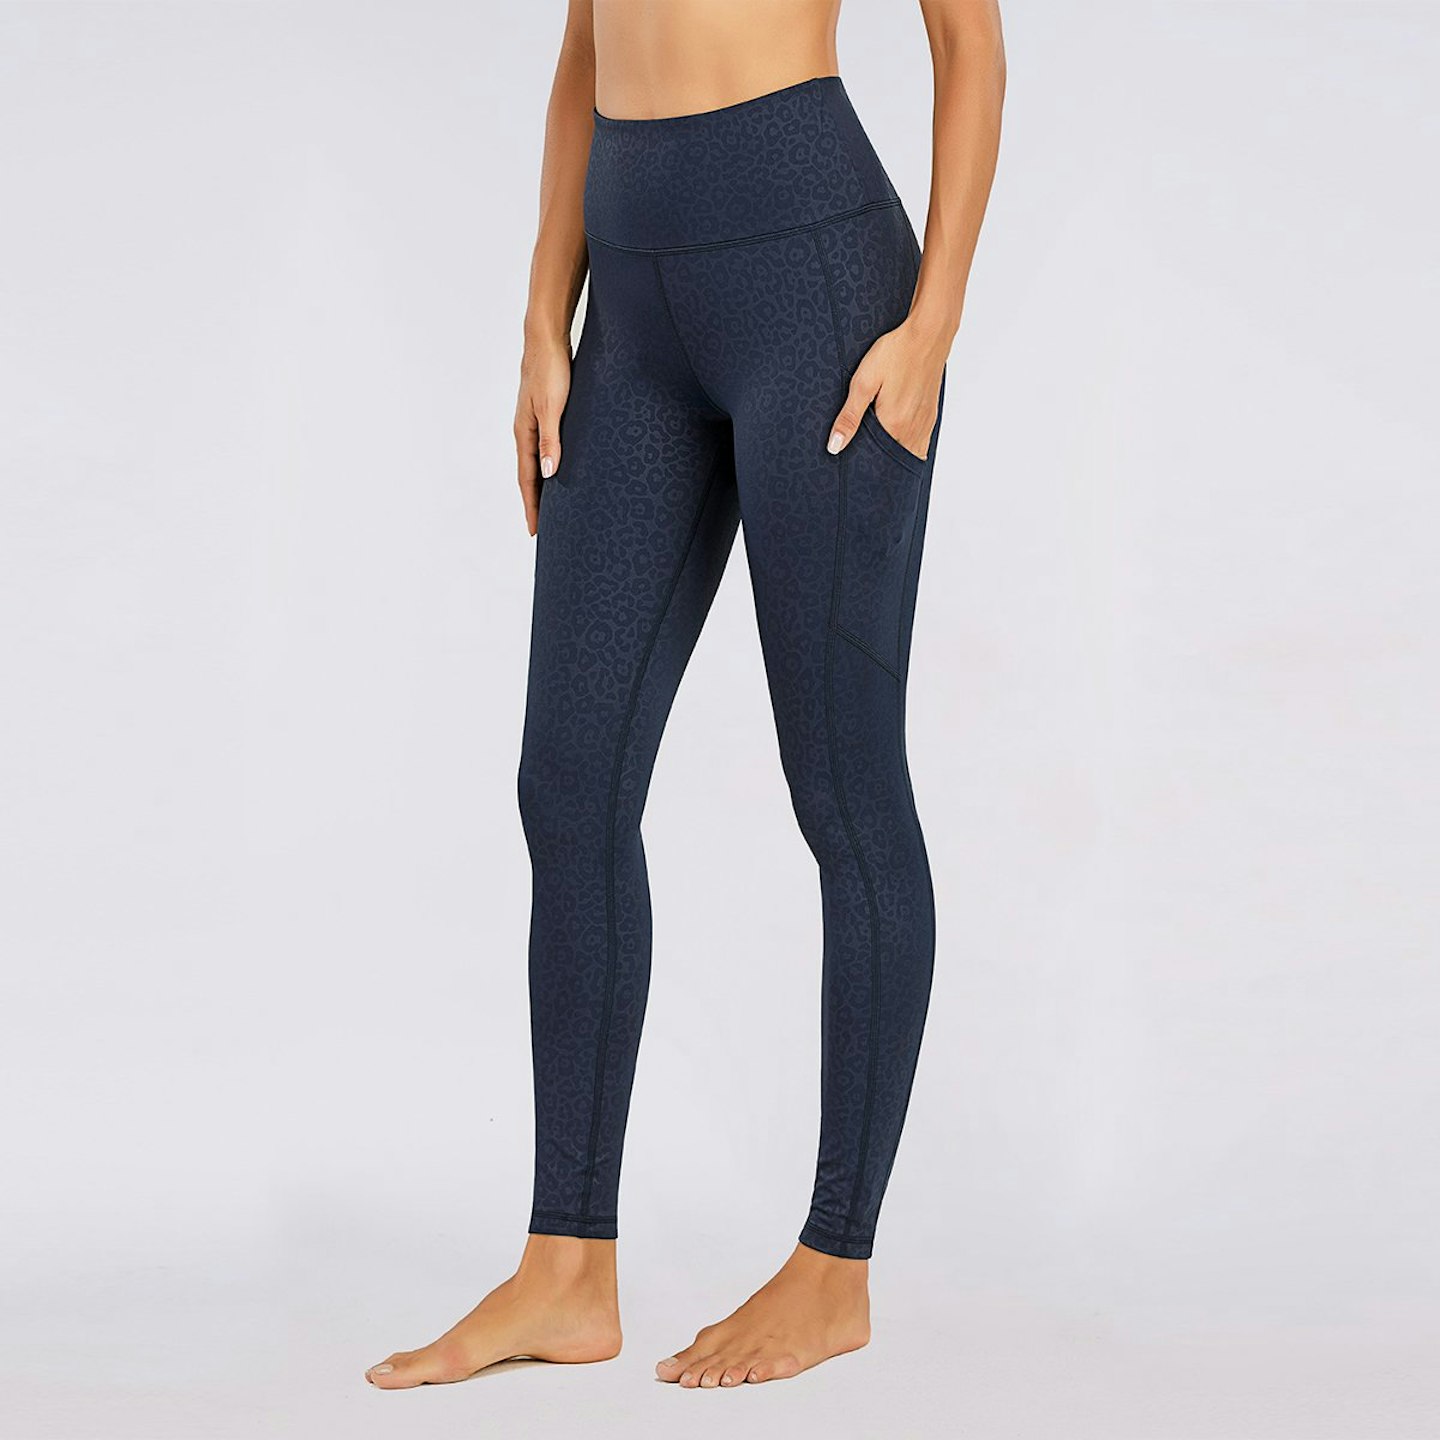 best workout leggings women Nailah, Black High-waisted Leopard Running Leggings, £46